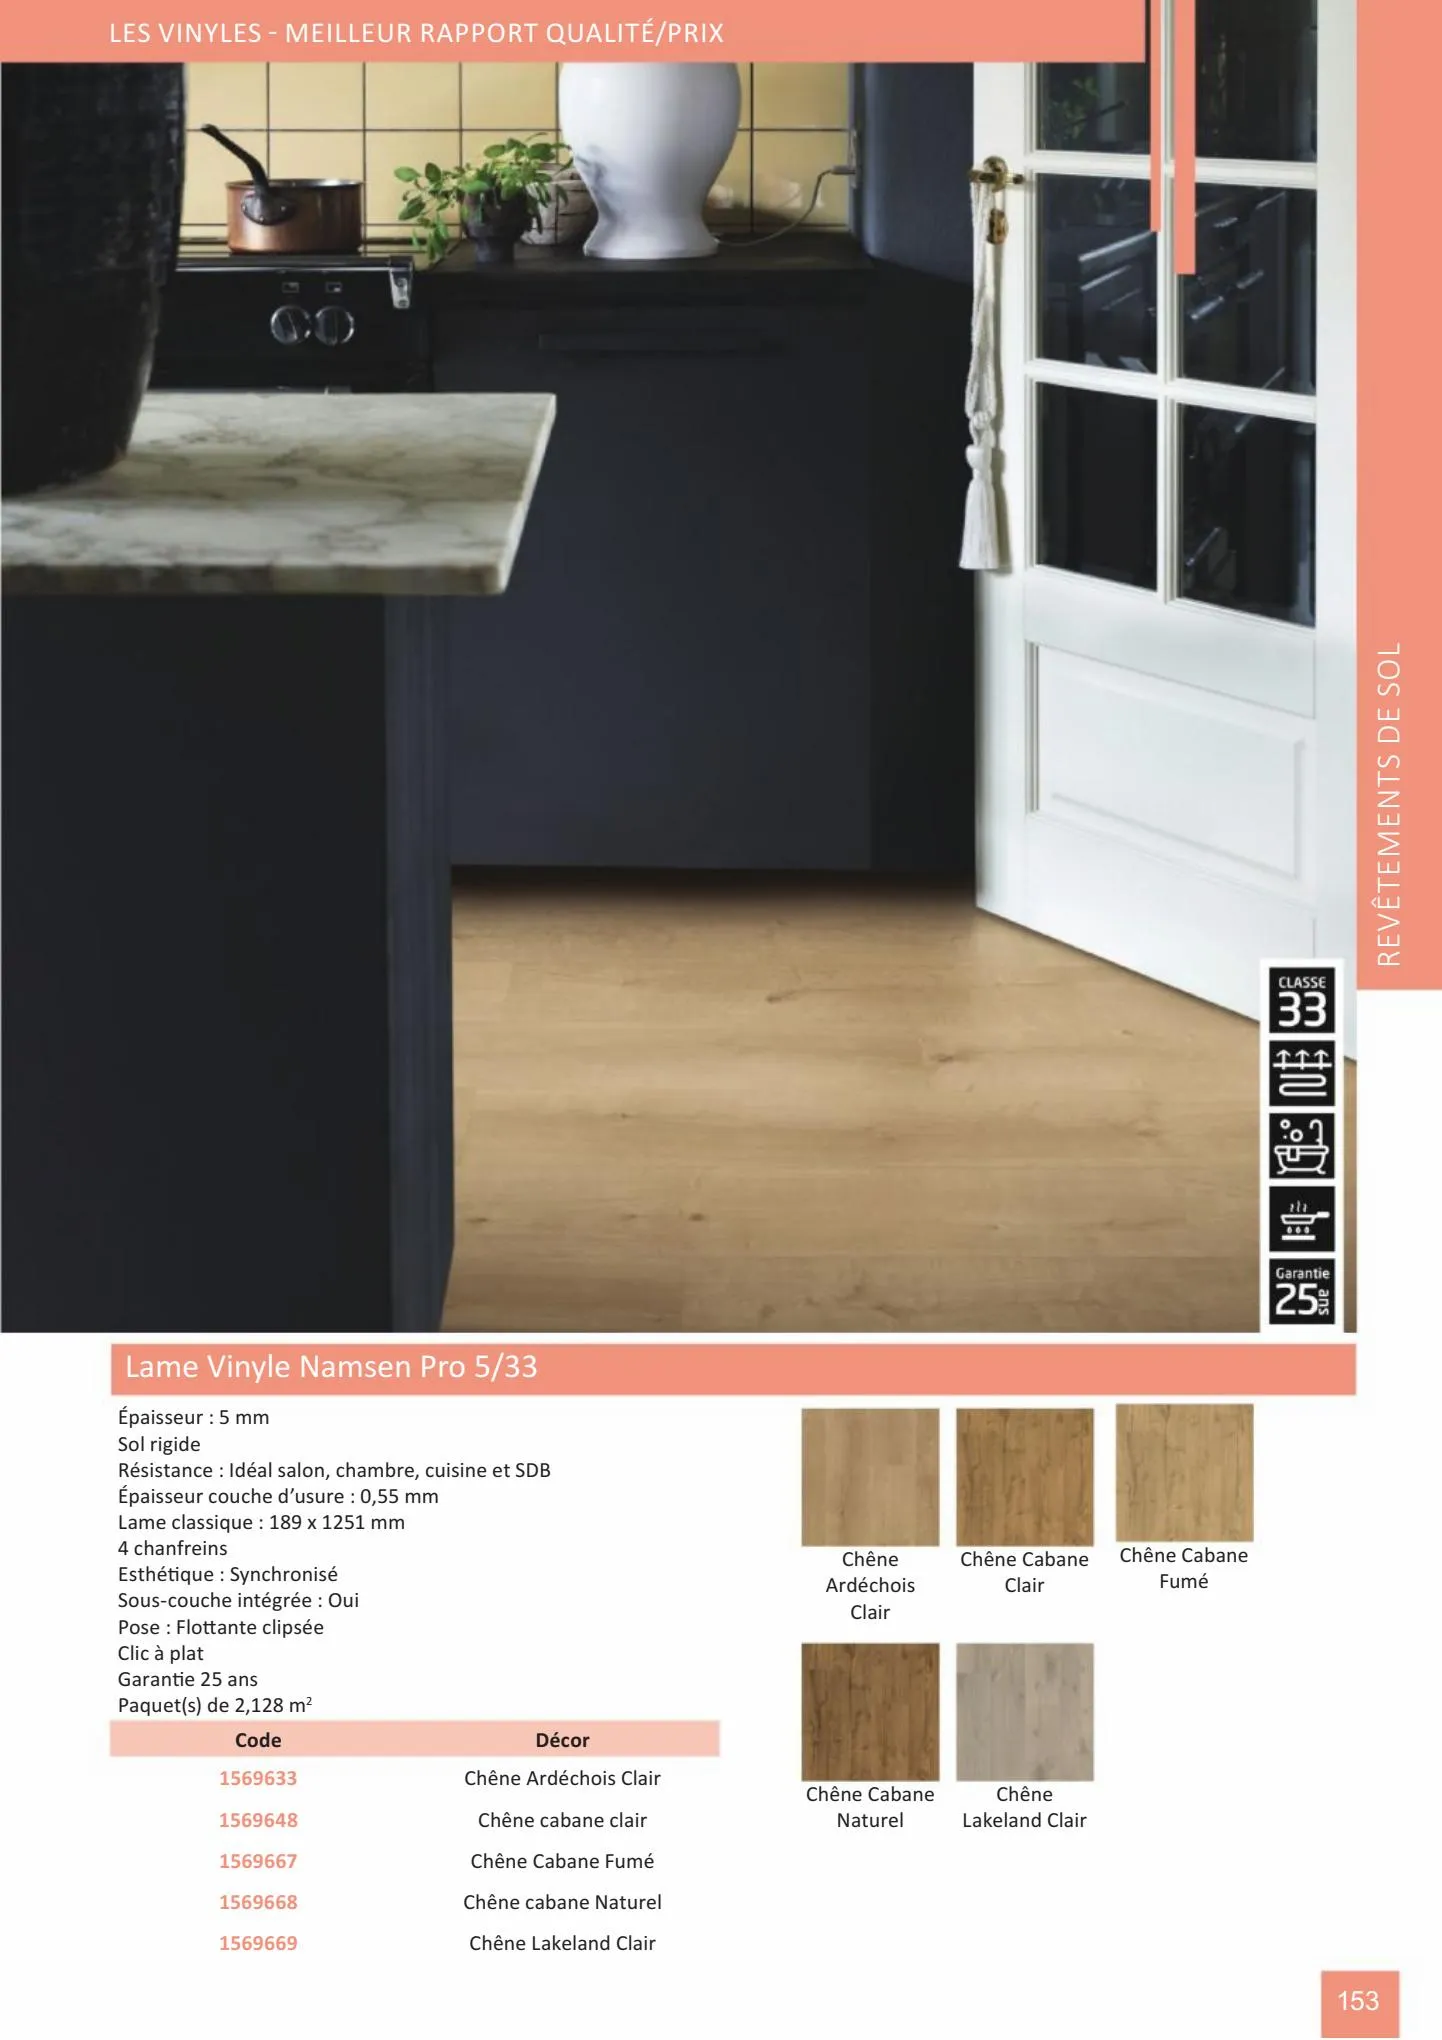 Catalogue Catalogue bois-panneaux, page 00153